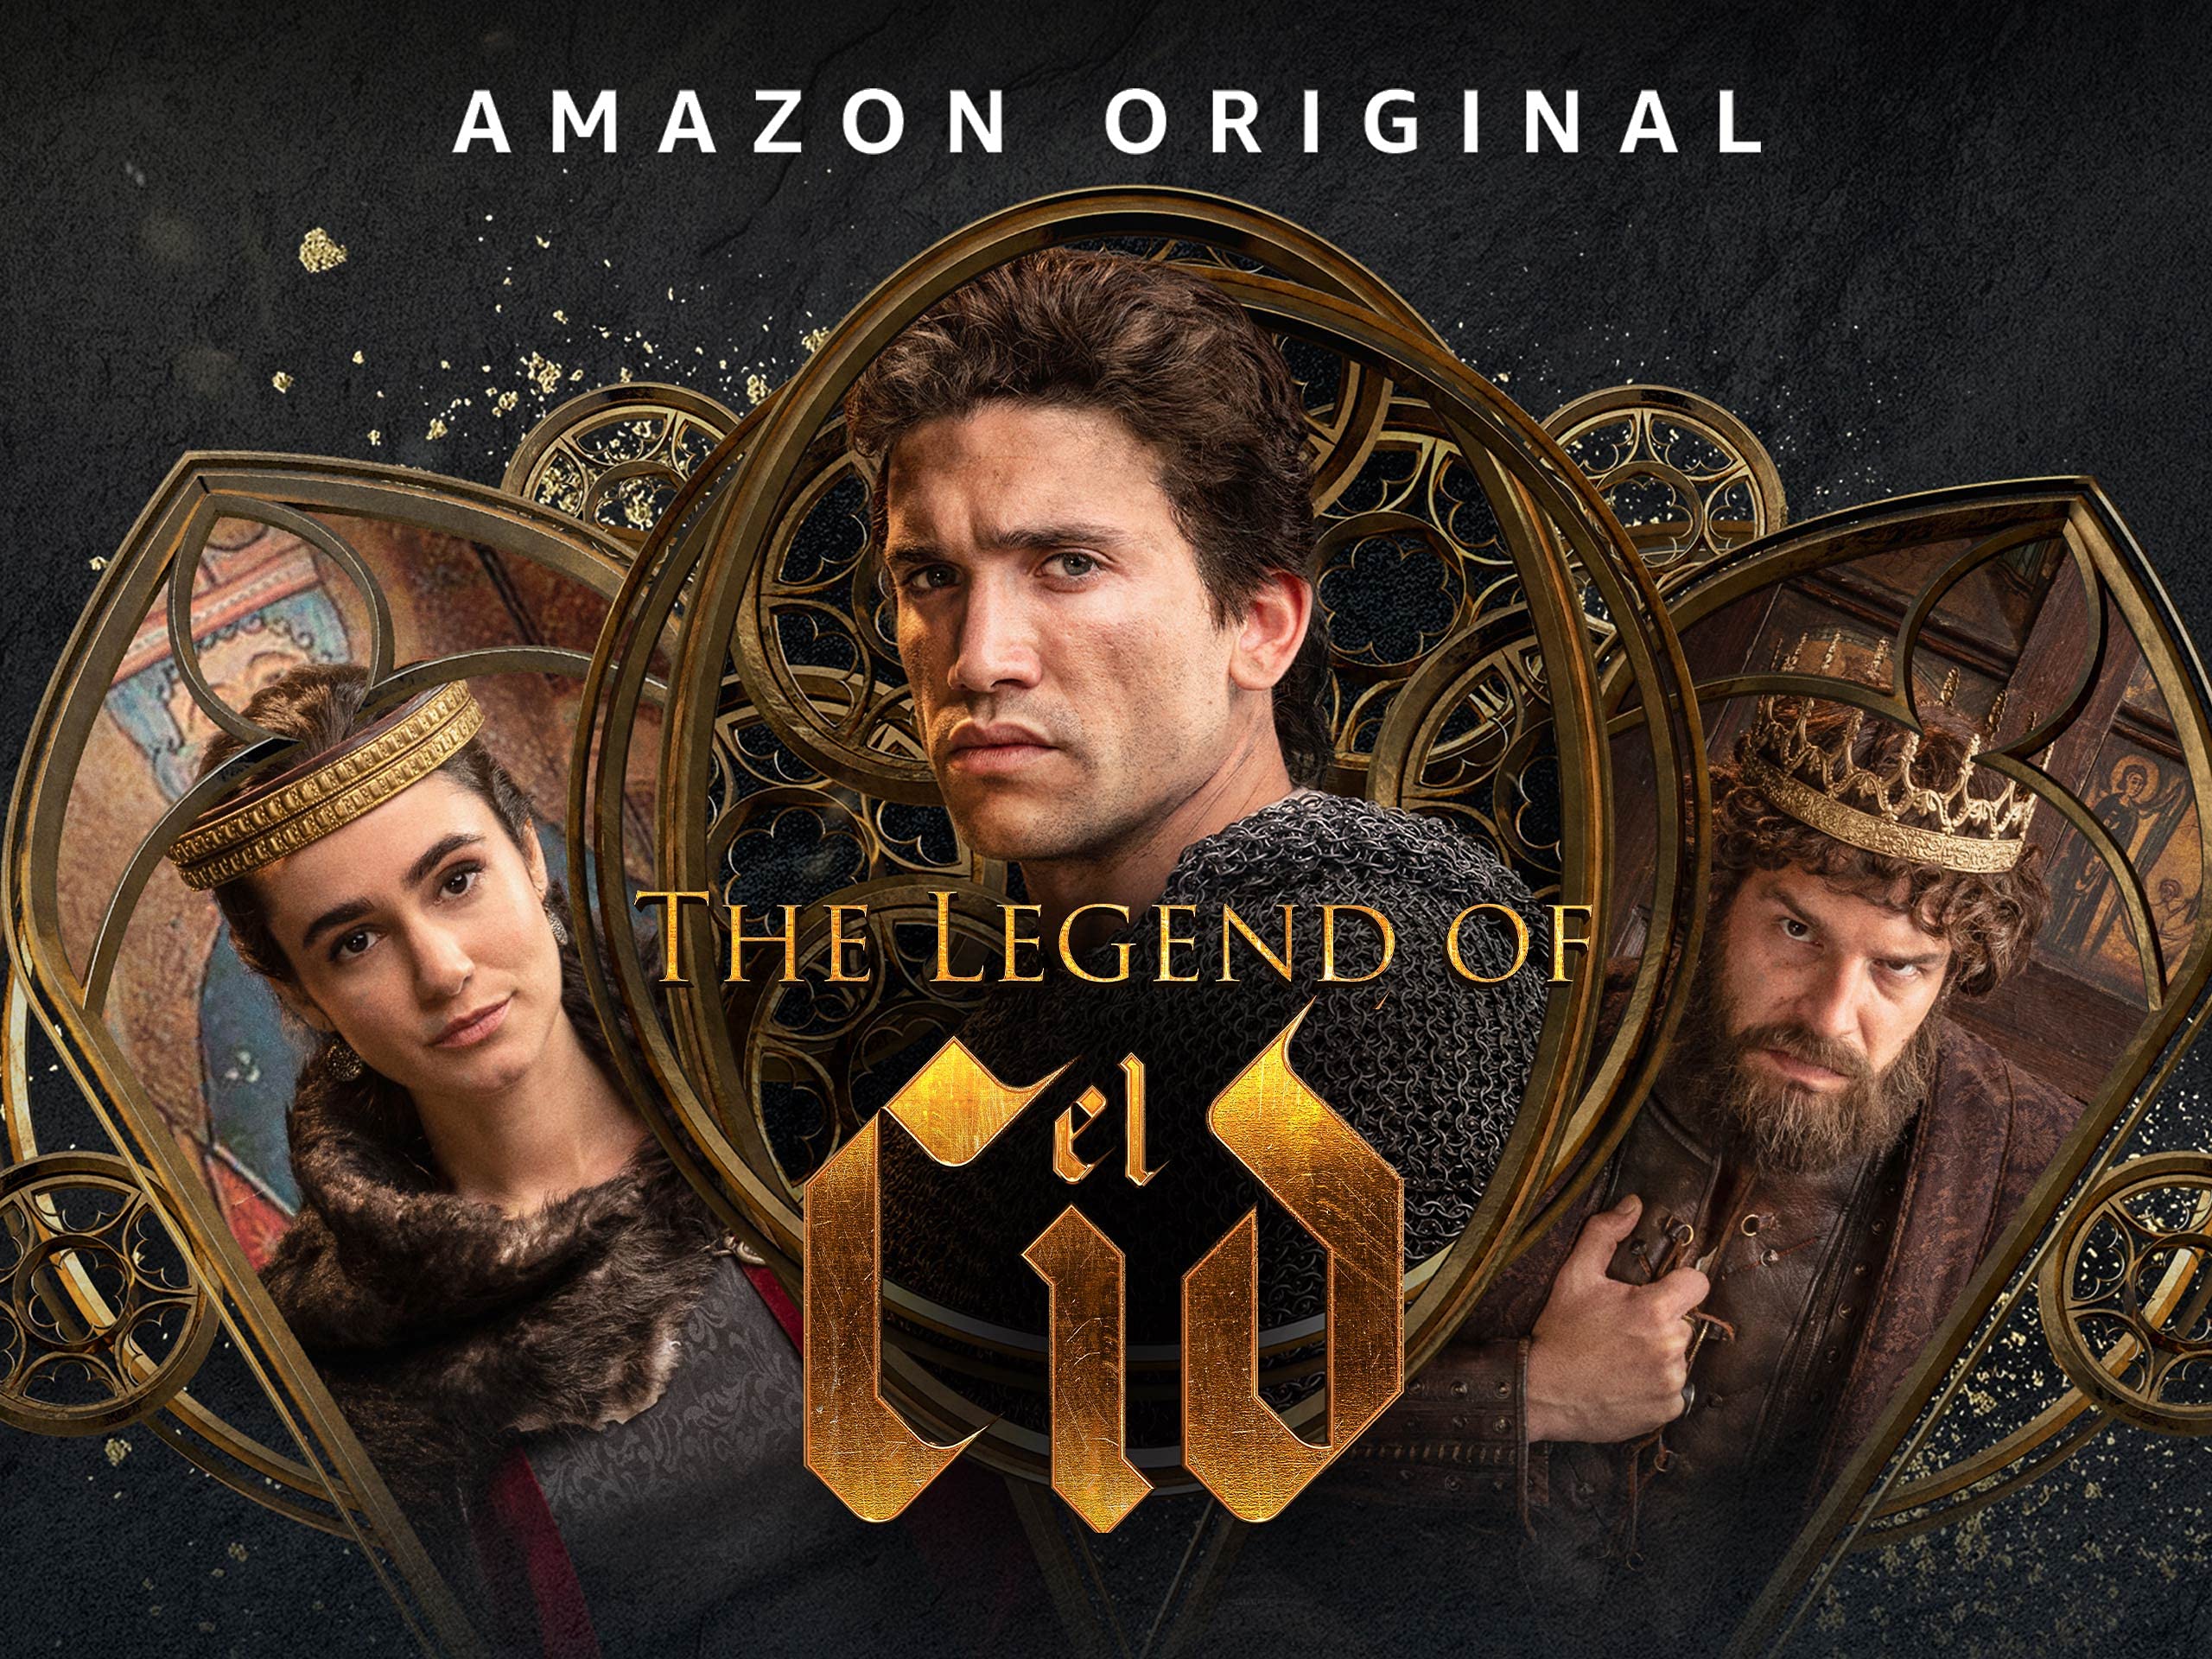 How to Watch El Cid Season 2 on Prime Video